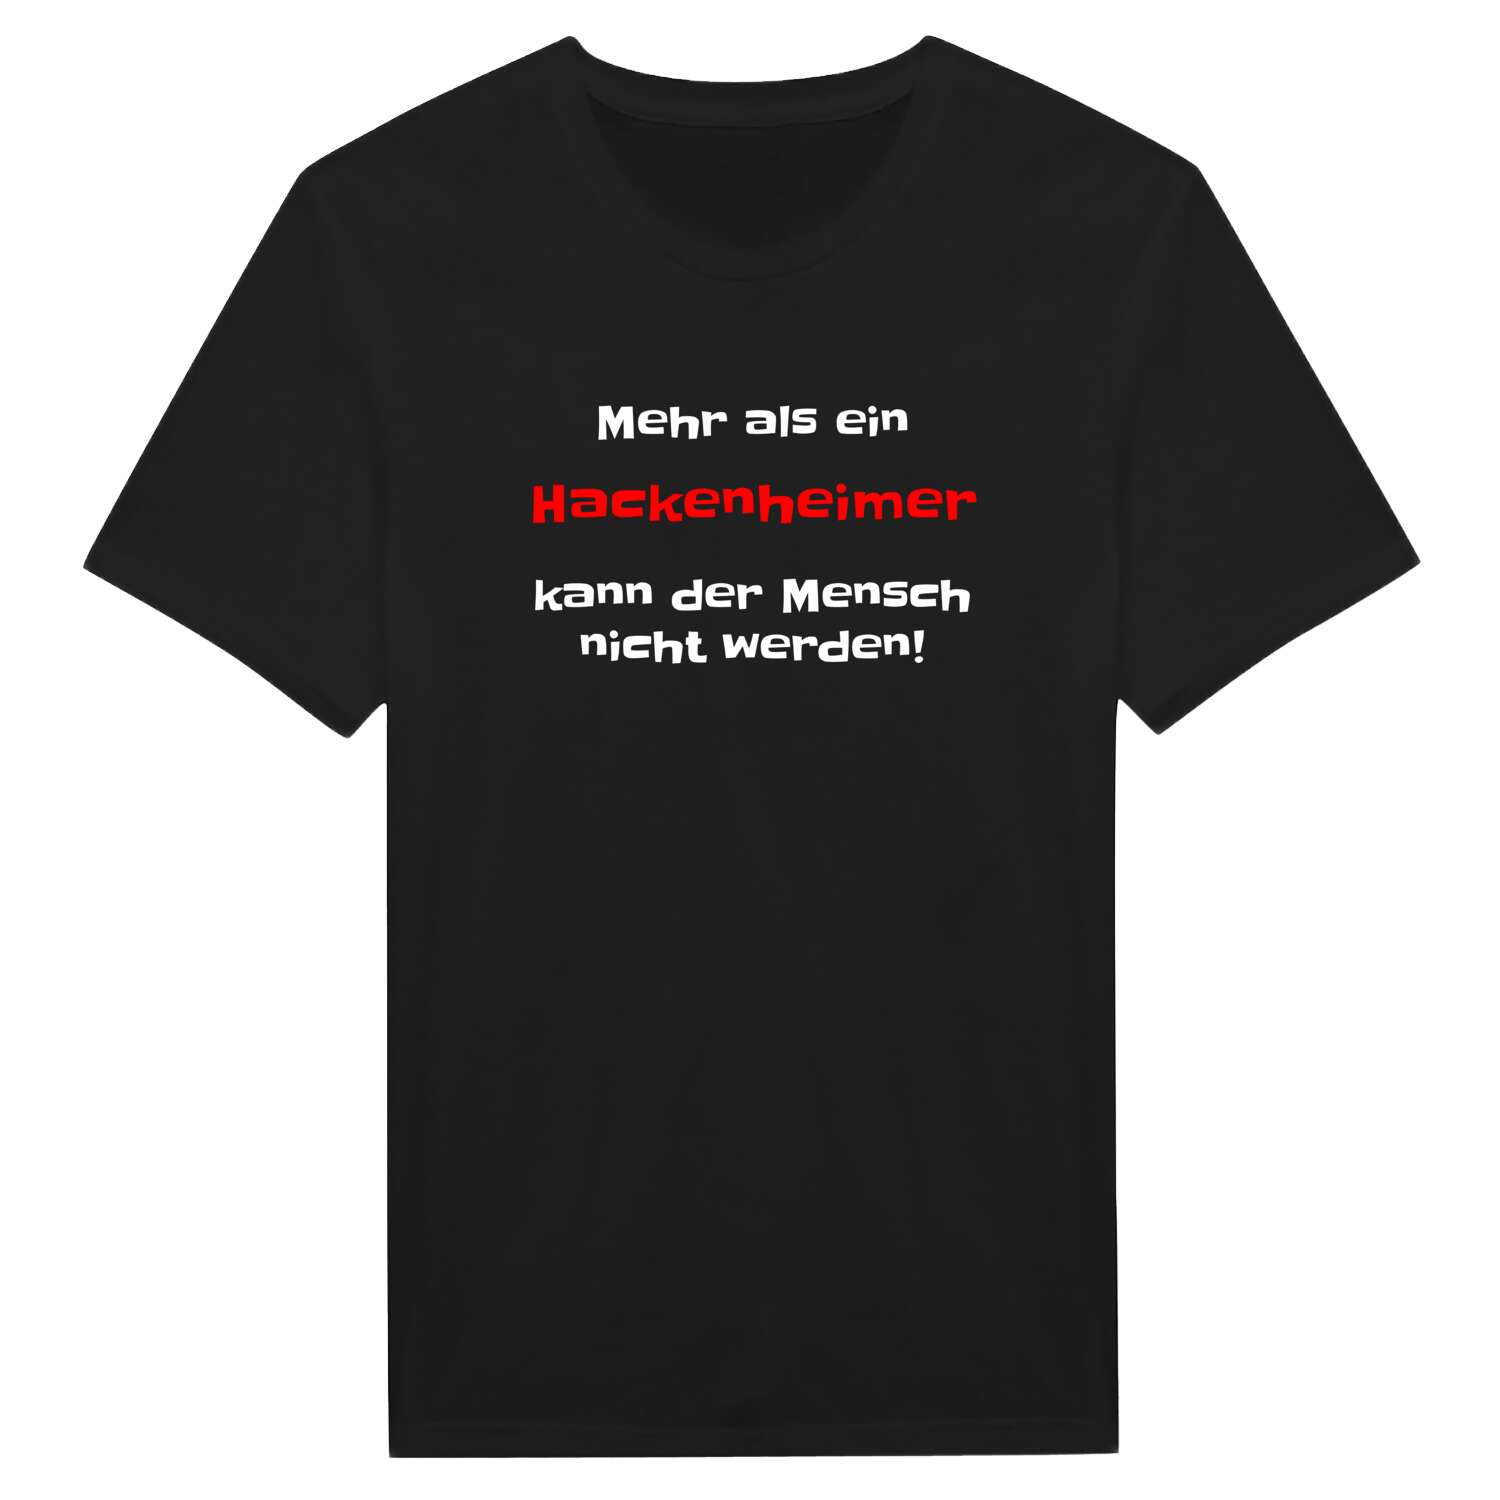 Hackenheim T-Shirt »Mehr als ein«